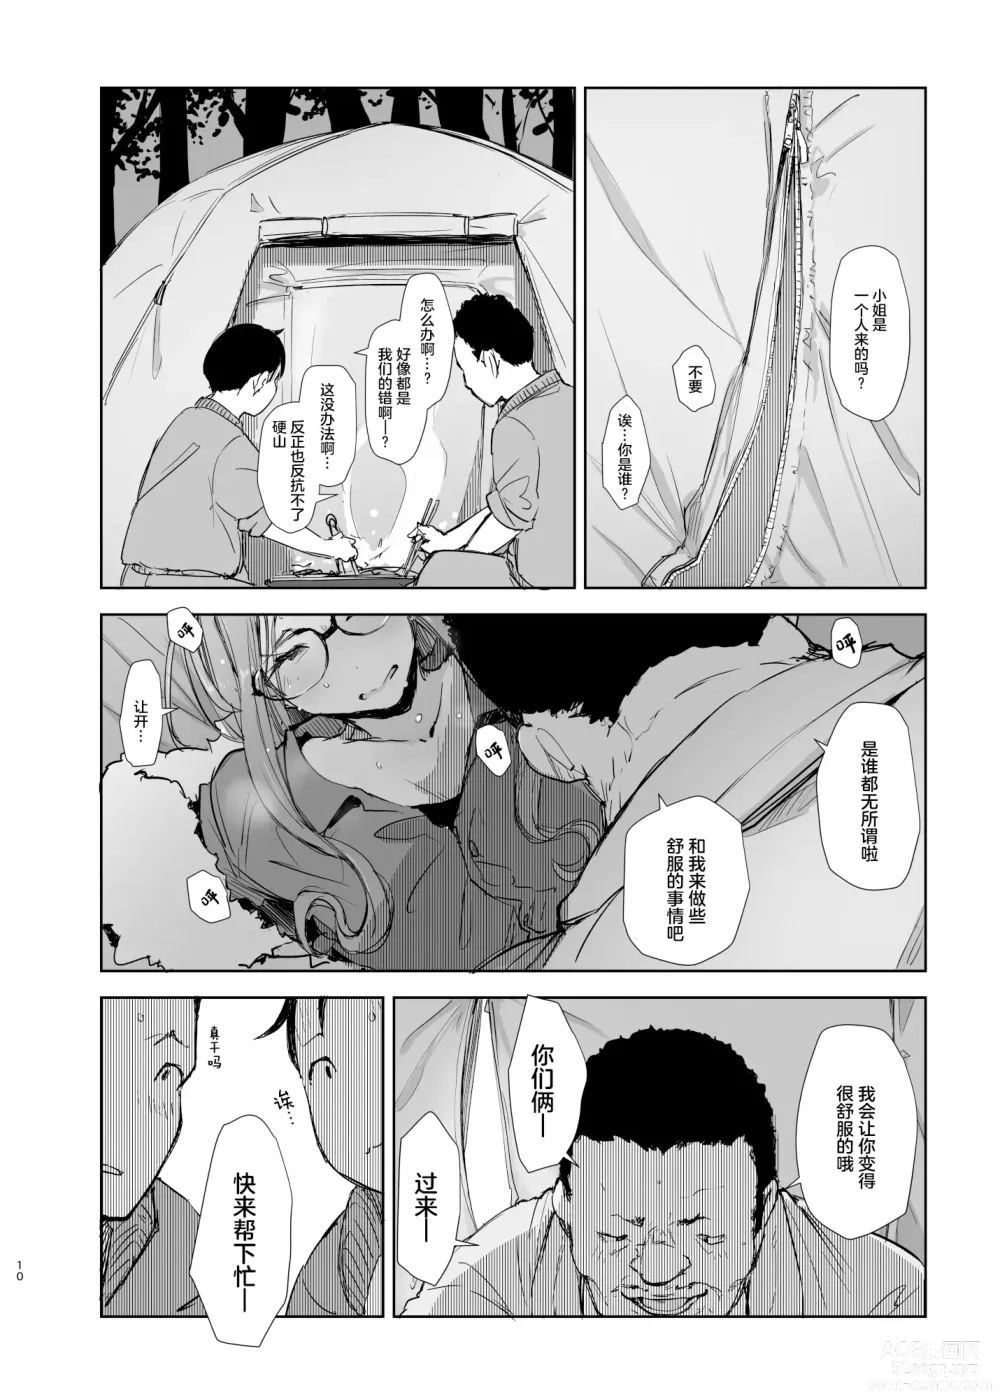 Page 9 of doujinshi Sakura Camp